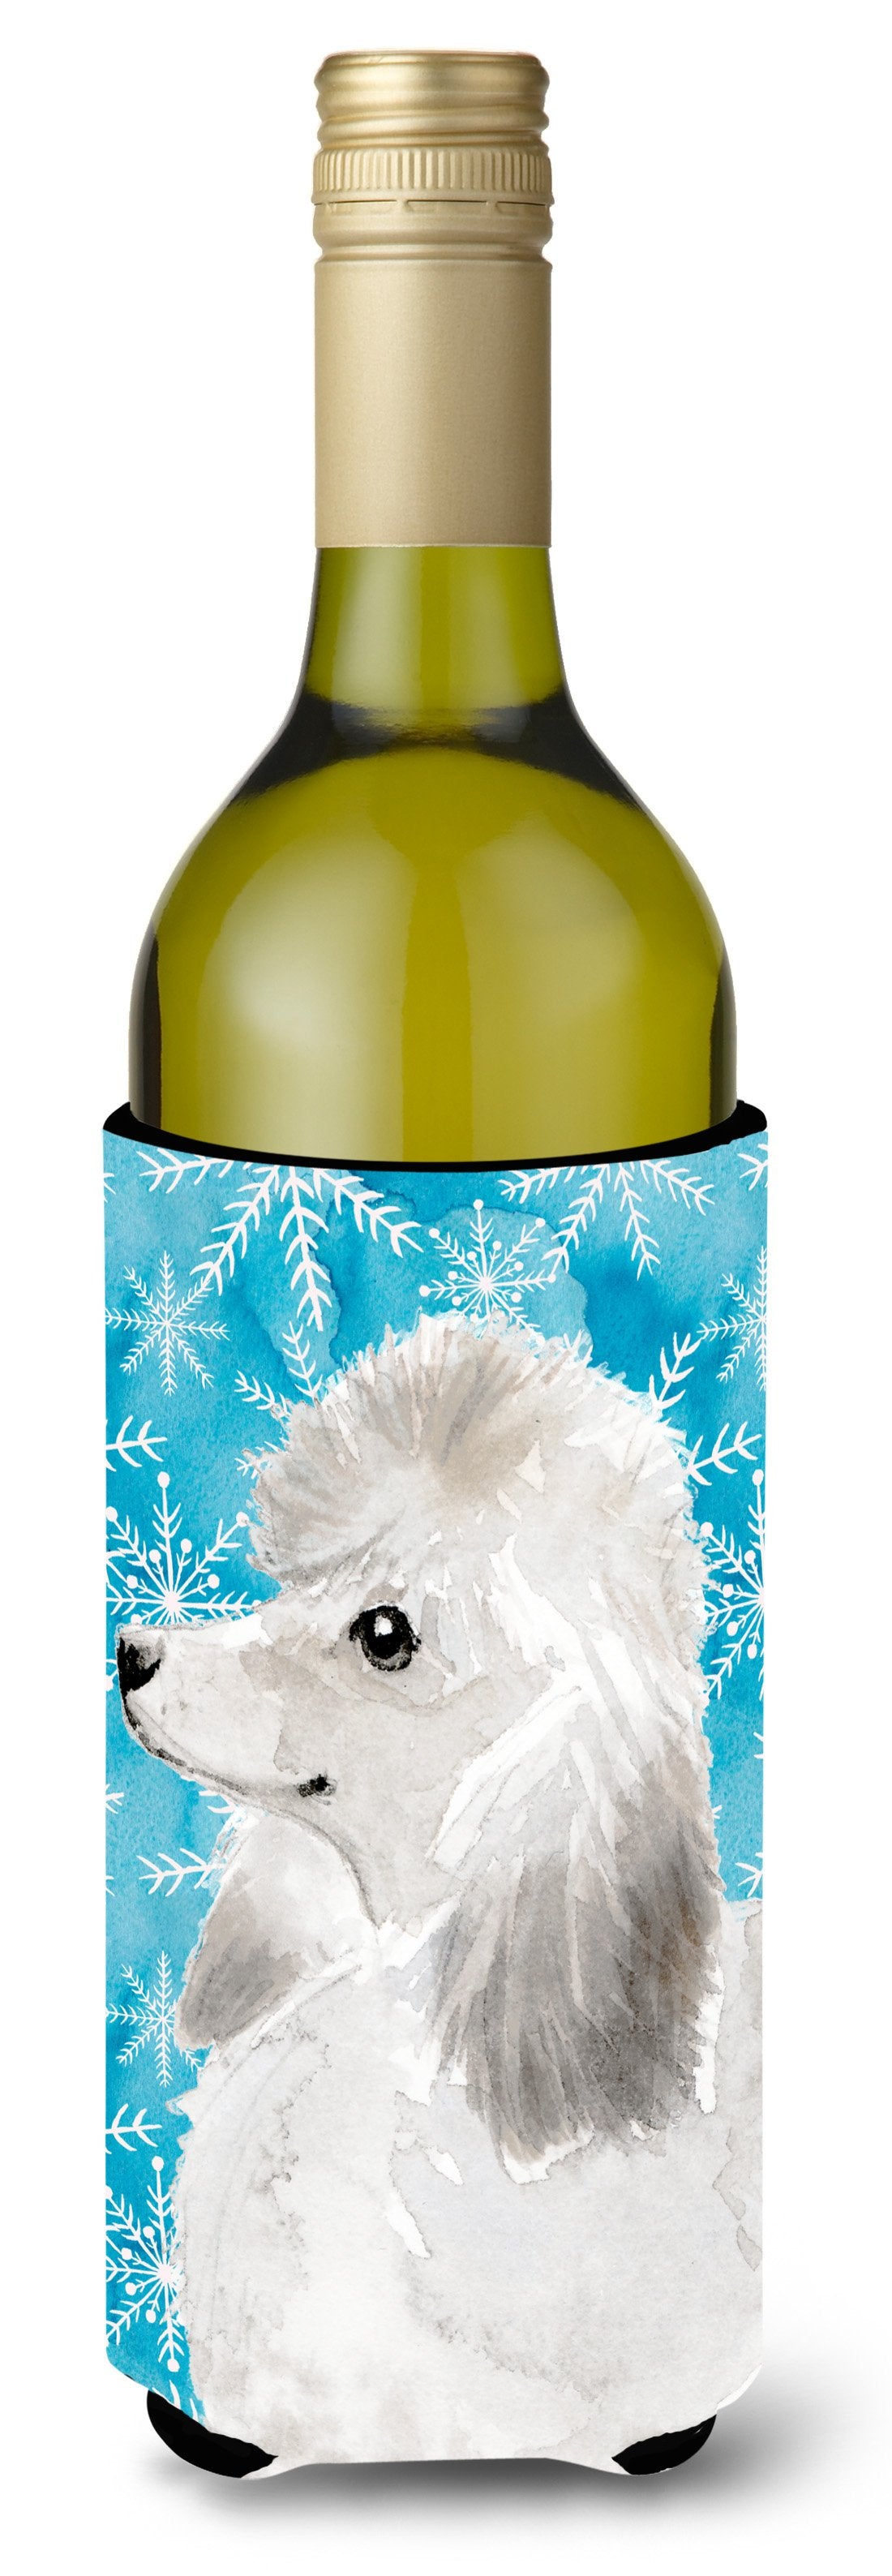 White Standard Poodle Winter Wine Bottle Beverge Insulator Hugger BB9456LITERK by Caroline's Treasures